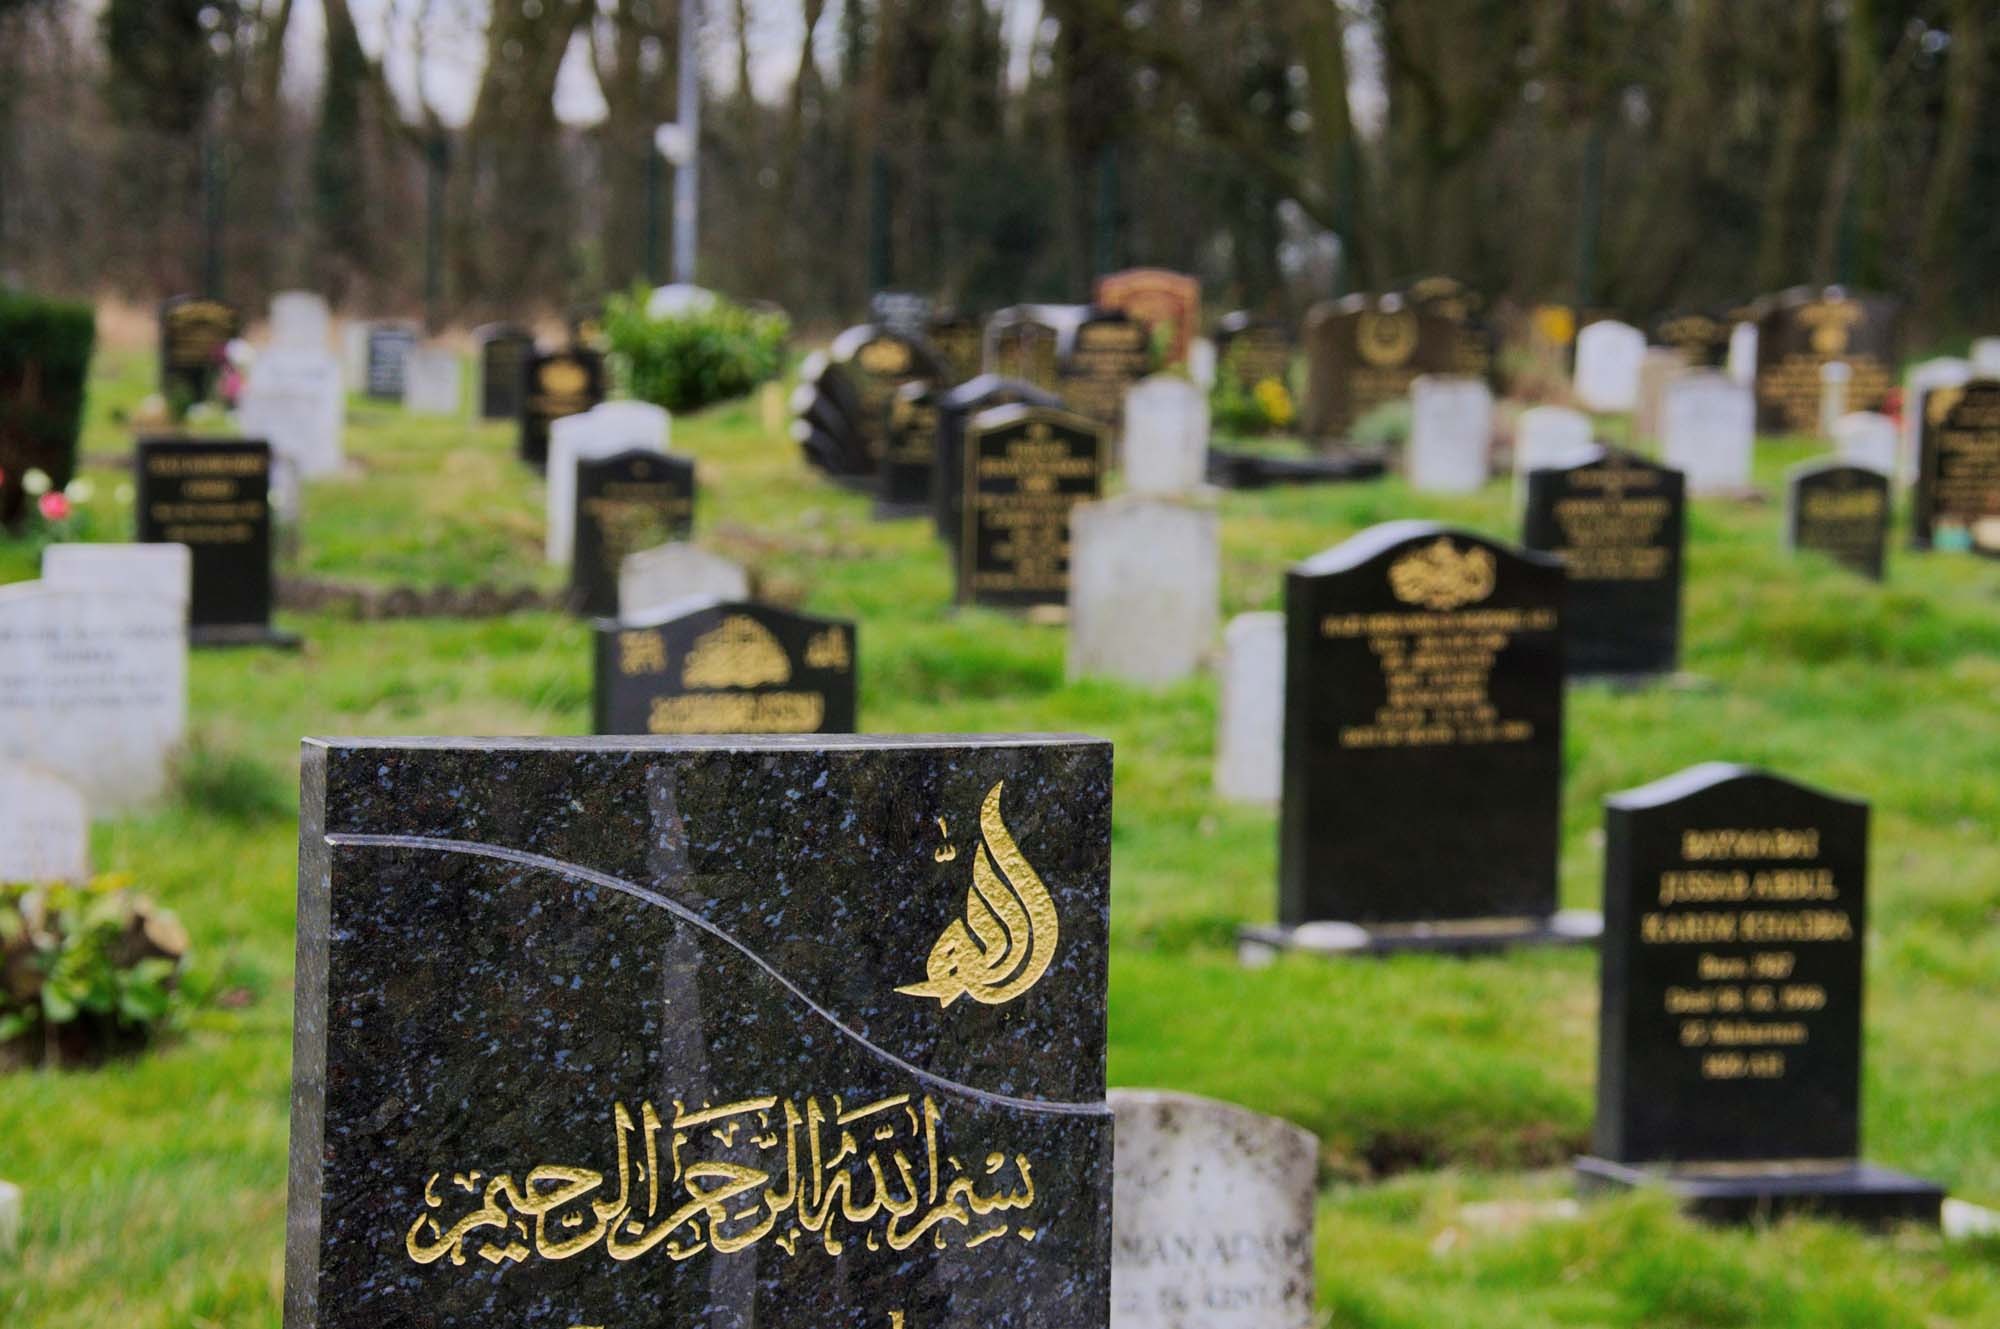 إفتتاح أكبر مقبرة إسلامية أطلق عليها اسم"مقبرة روضة المسلمين"بهولندا